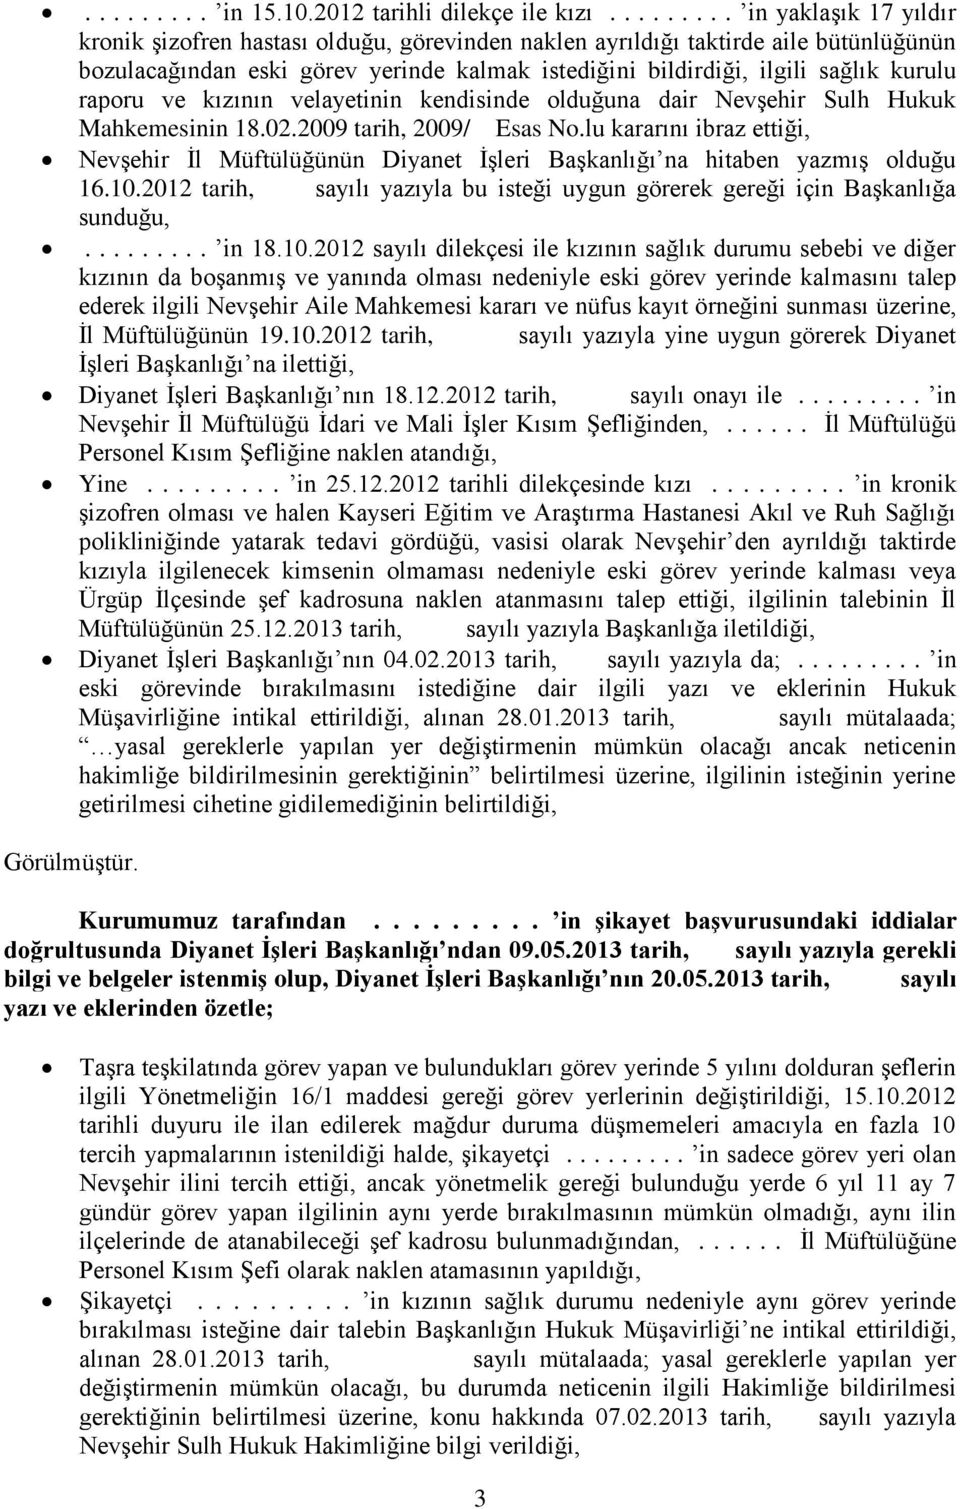 kurulu raporu ve kızının velayetinin kendisinde olduğuna dair Nevşehir Sulh Hukuk Mahkemesinin 18.02.2009 tarih, 2009/ Esas No.